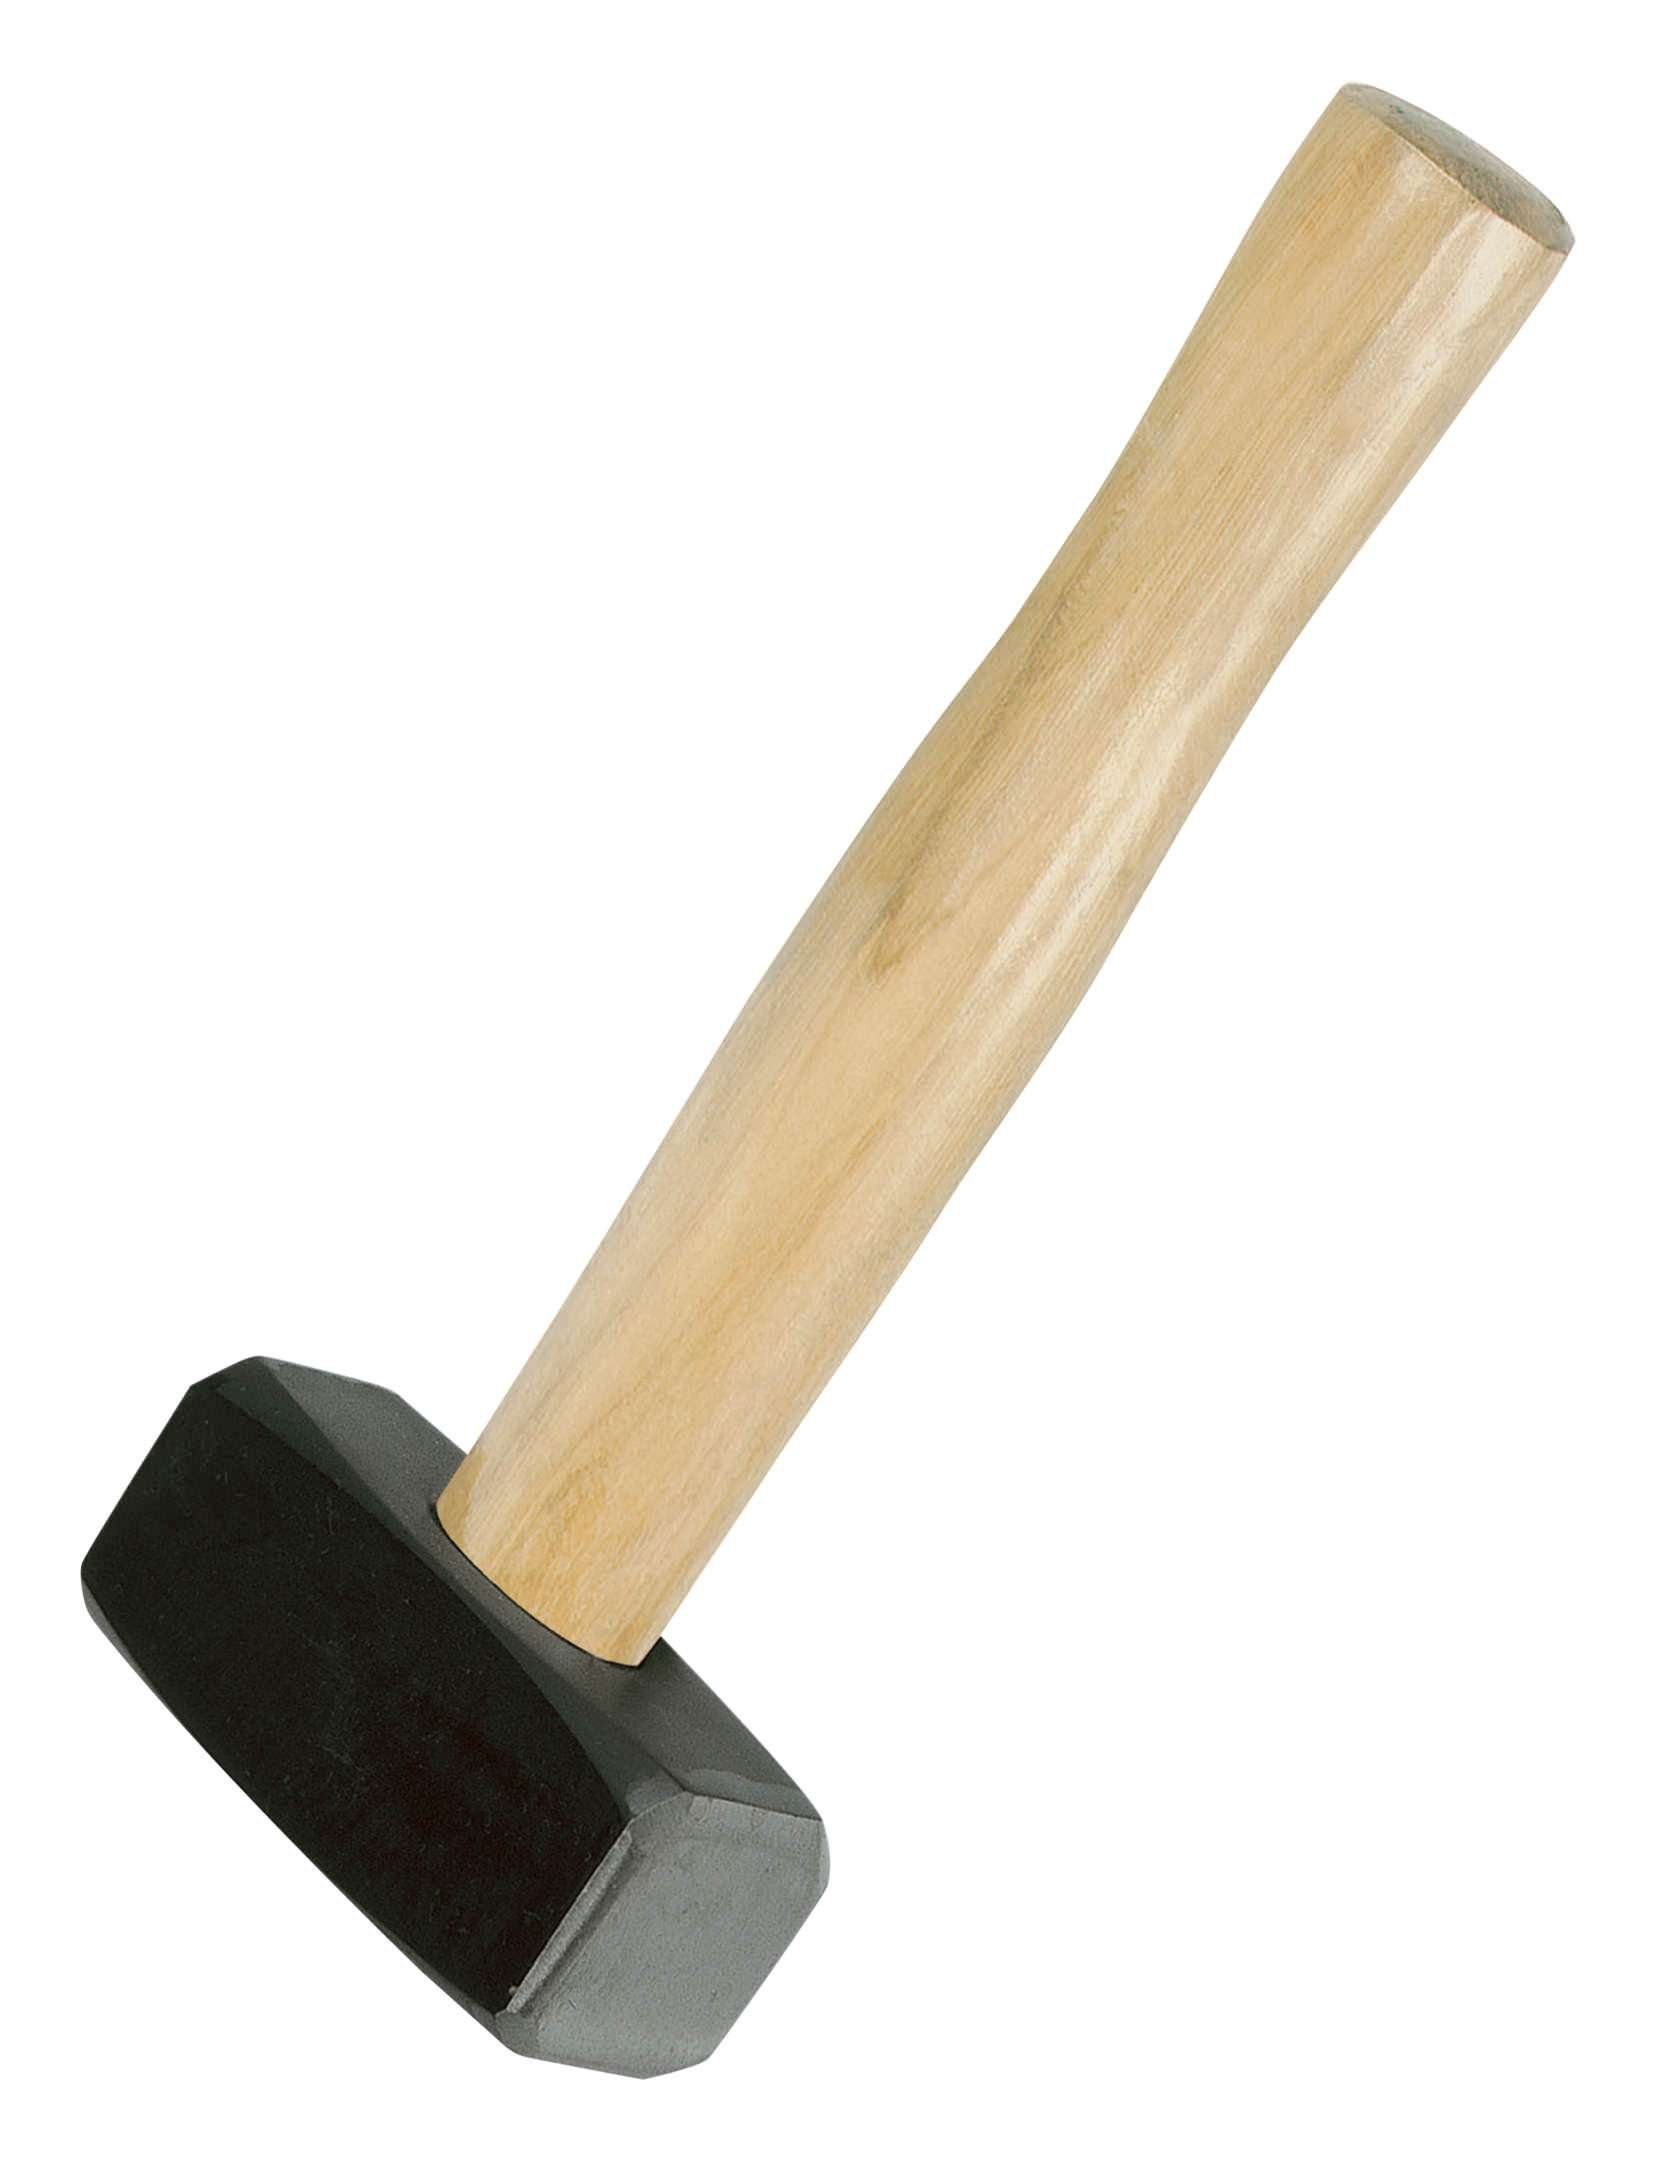 IDEALSPATEN Hammer, 1500 g Handfäustel